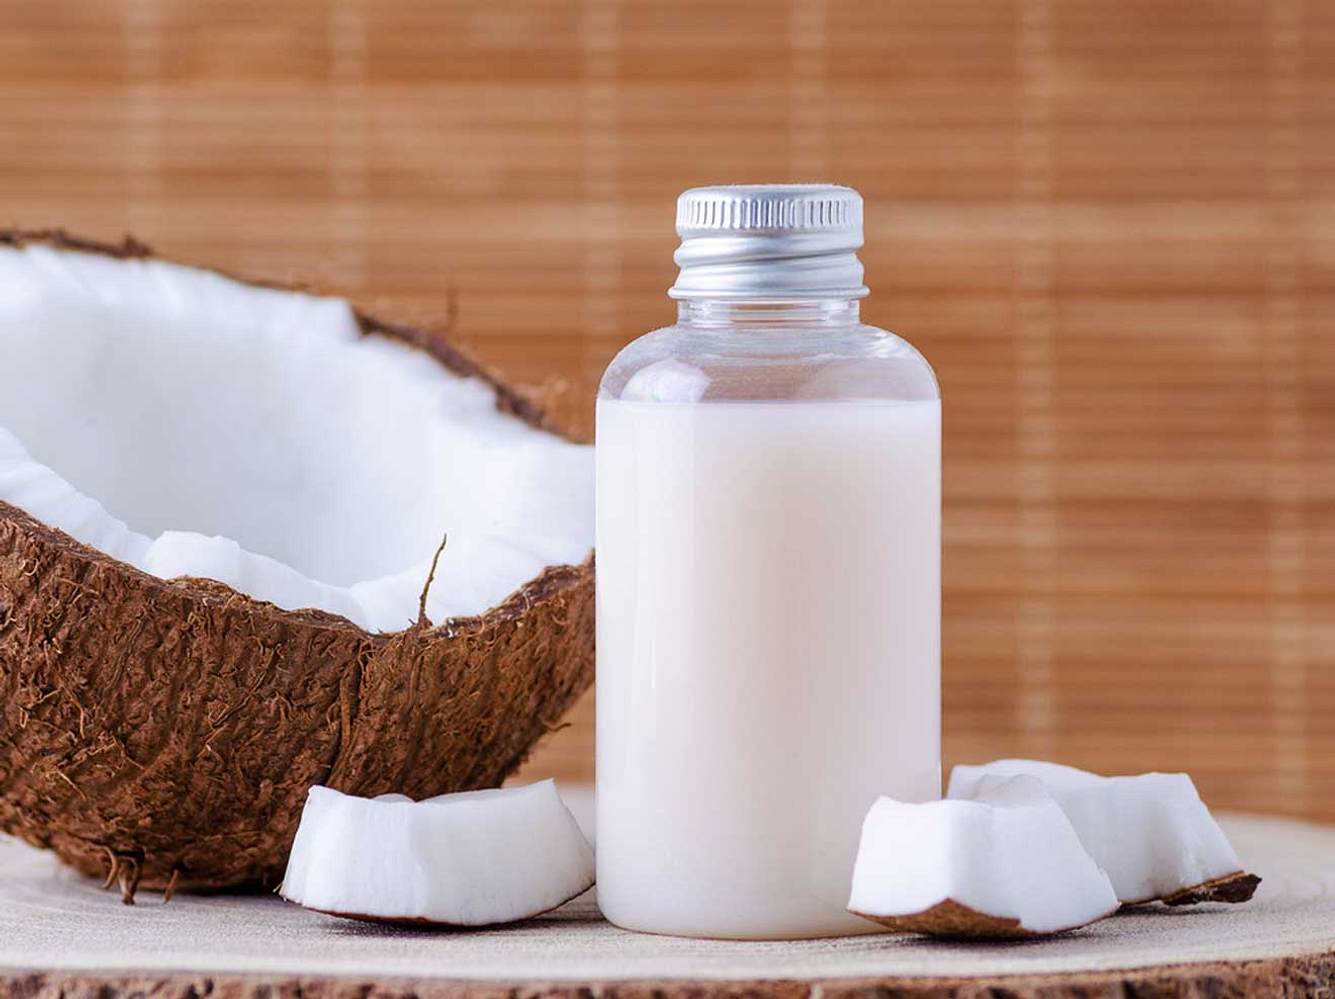 Kokosmilch ist nicht nur gesund, sondern sorgt auch für schöne Haut!